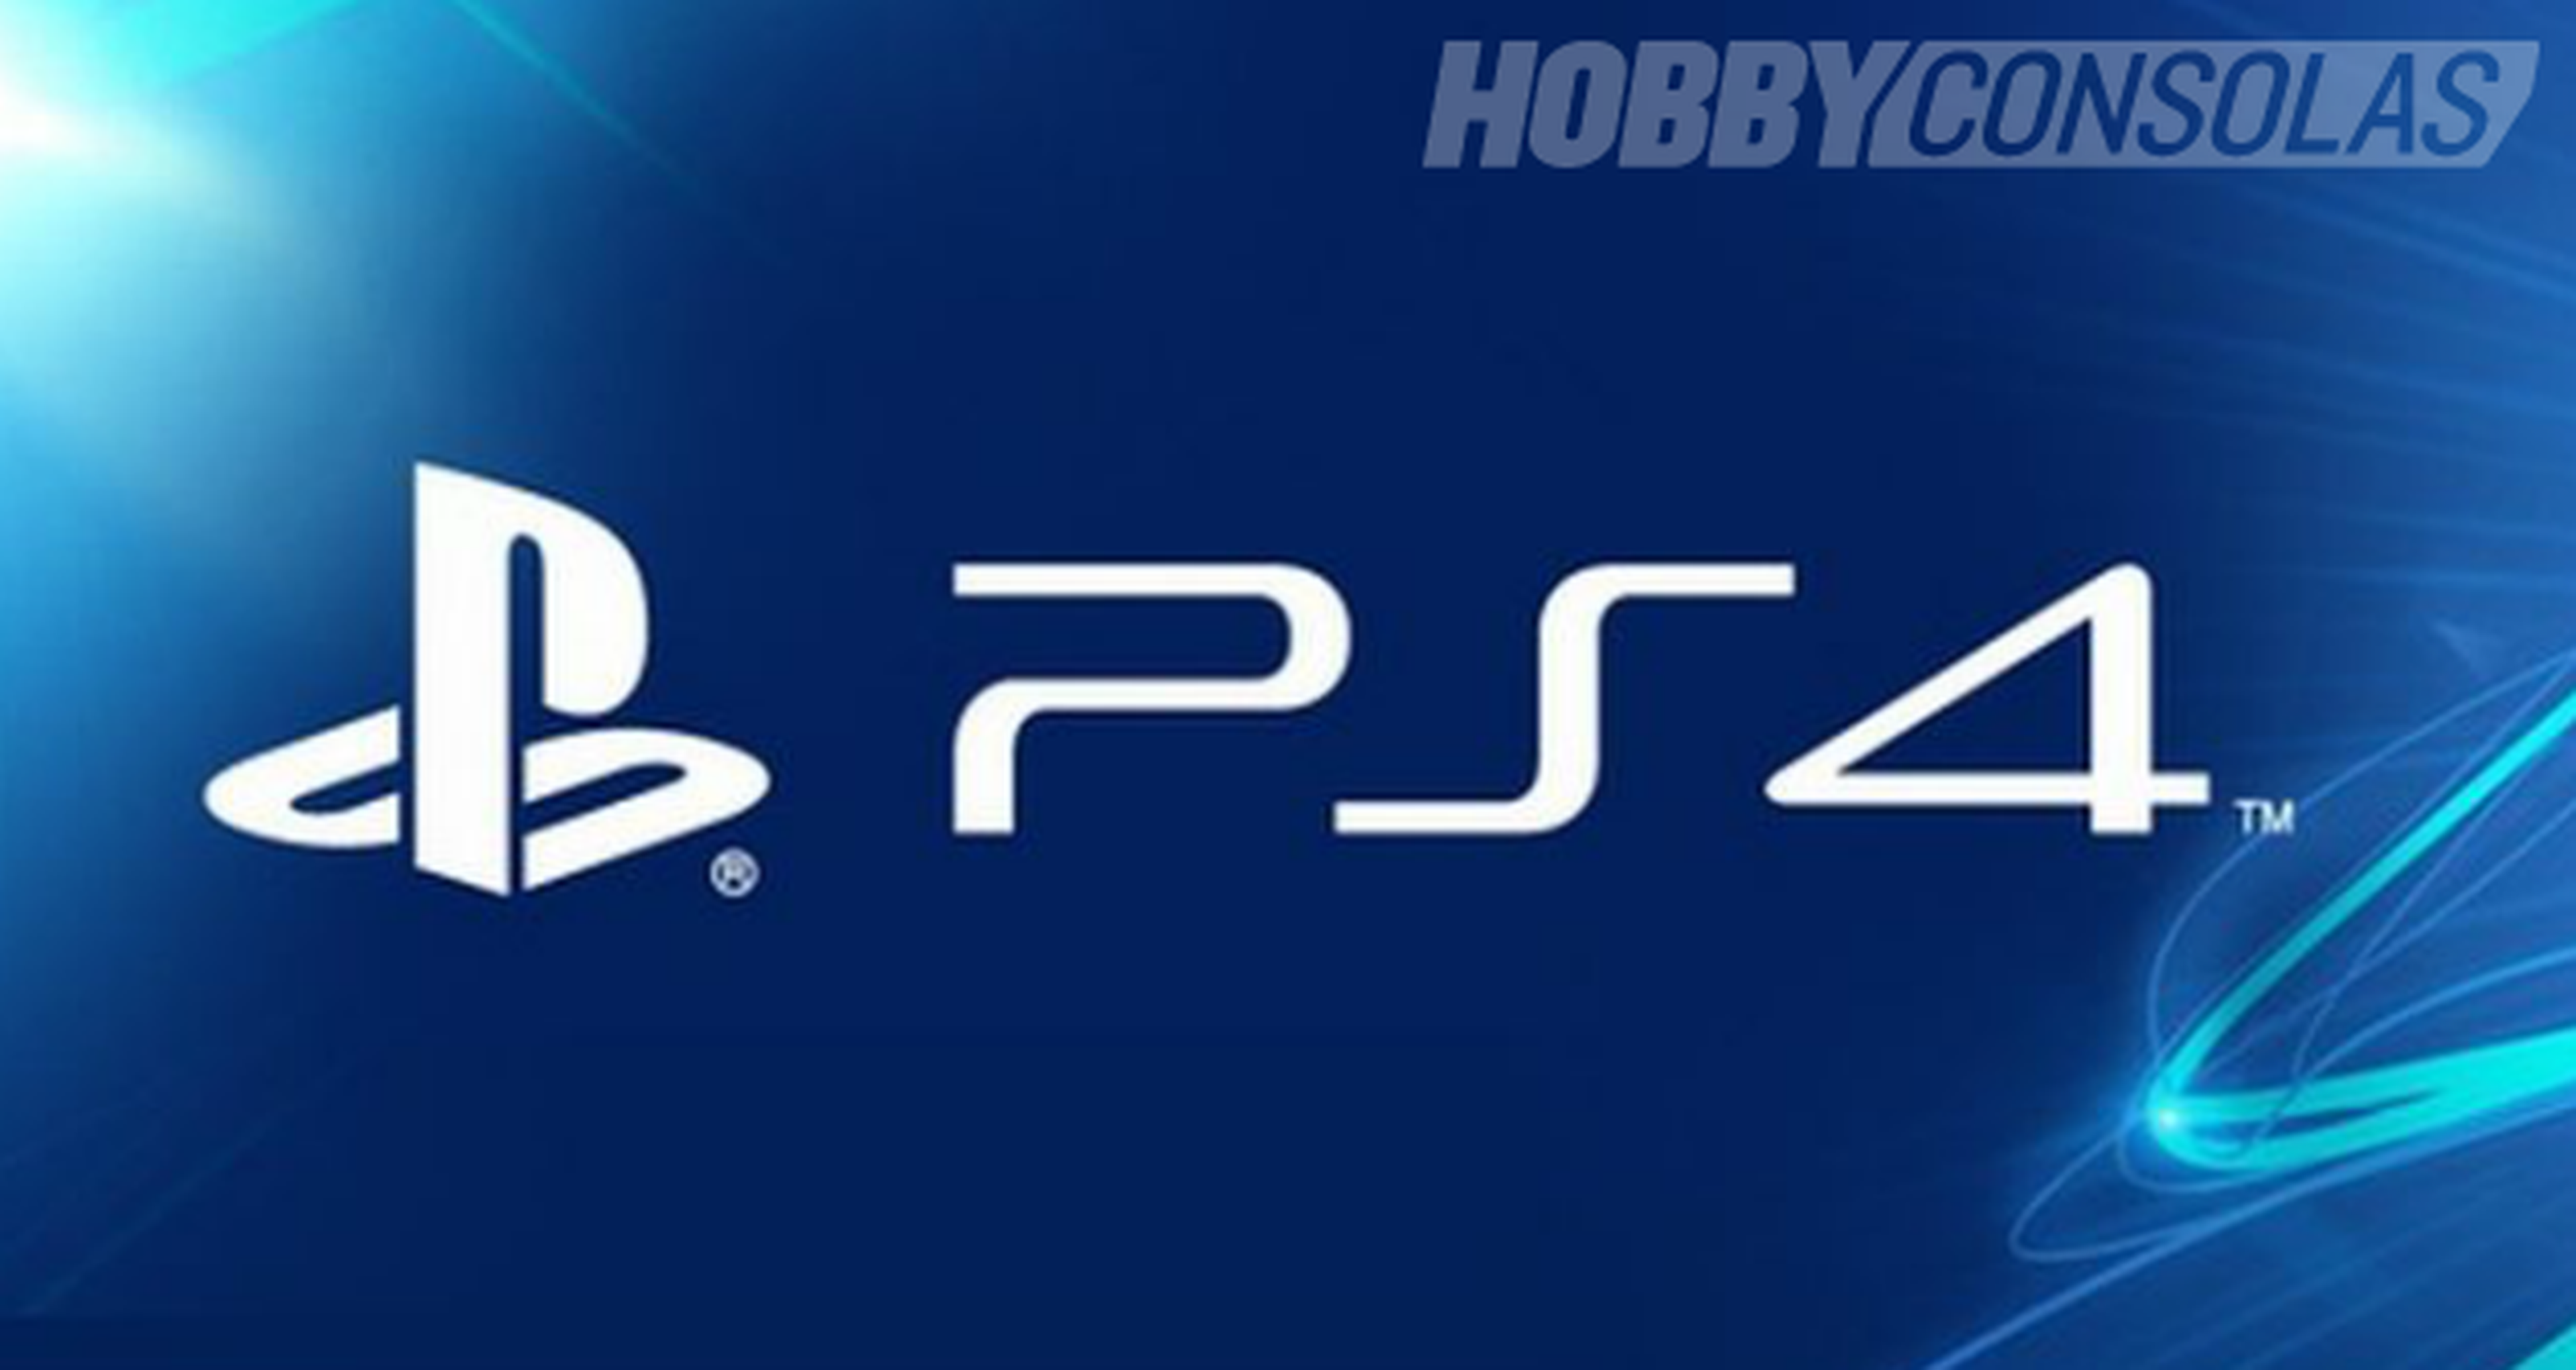 La actualización 1.7 de PS4 permitirá atenuar la luz del DualShock 4